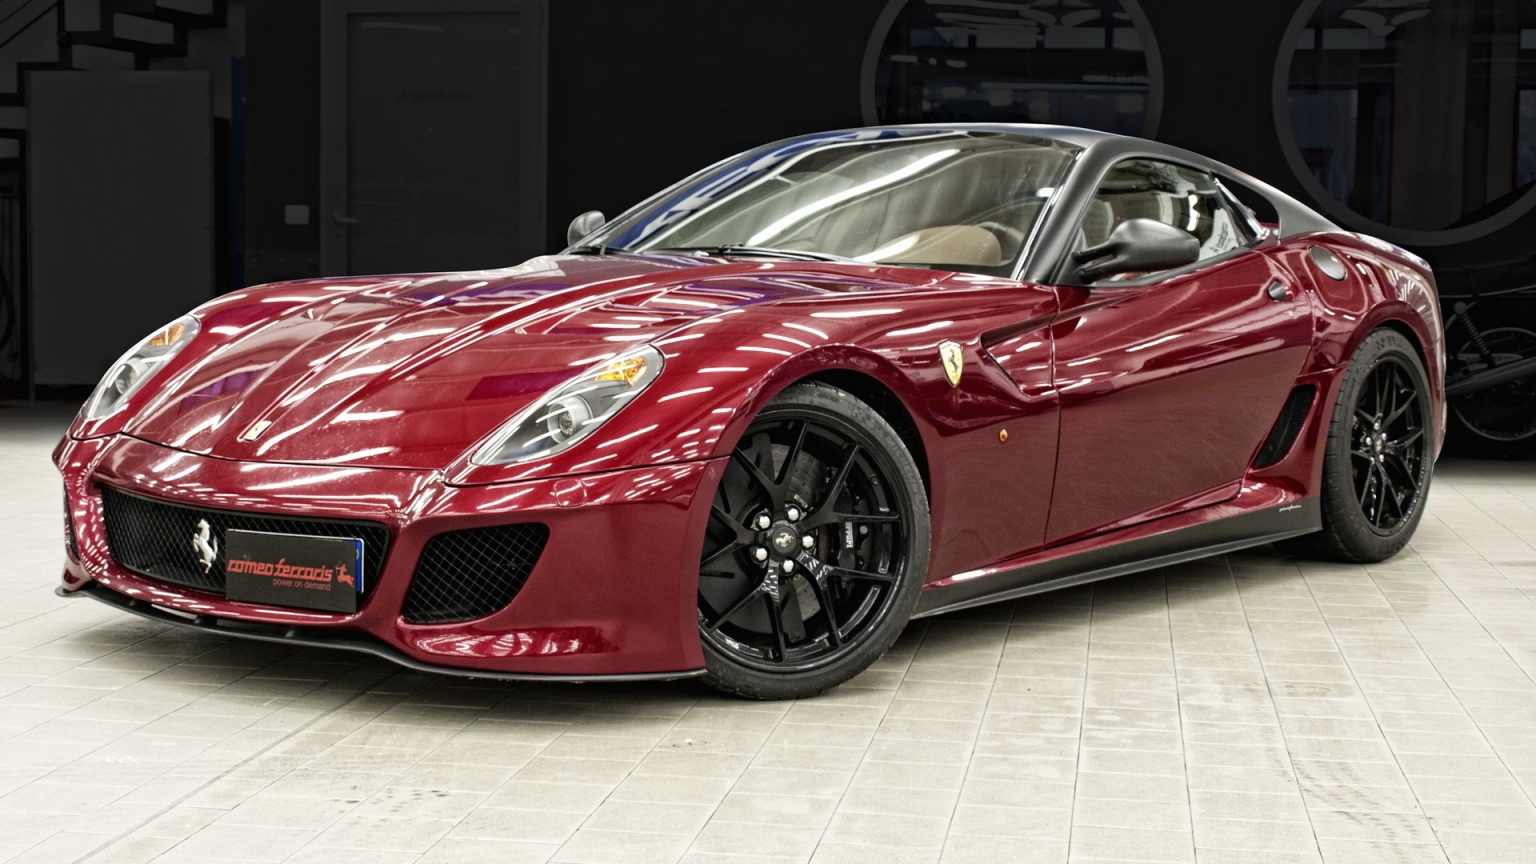 Ferrari 599 GTO Red for 1536 x 864 HDTV resolution